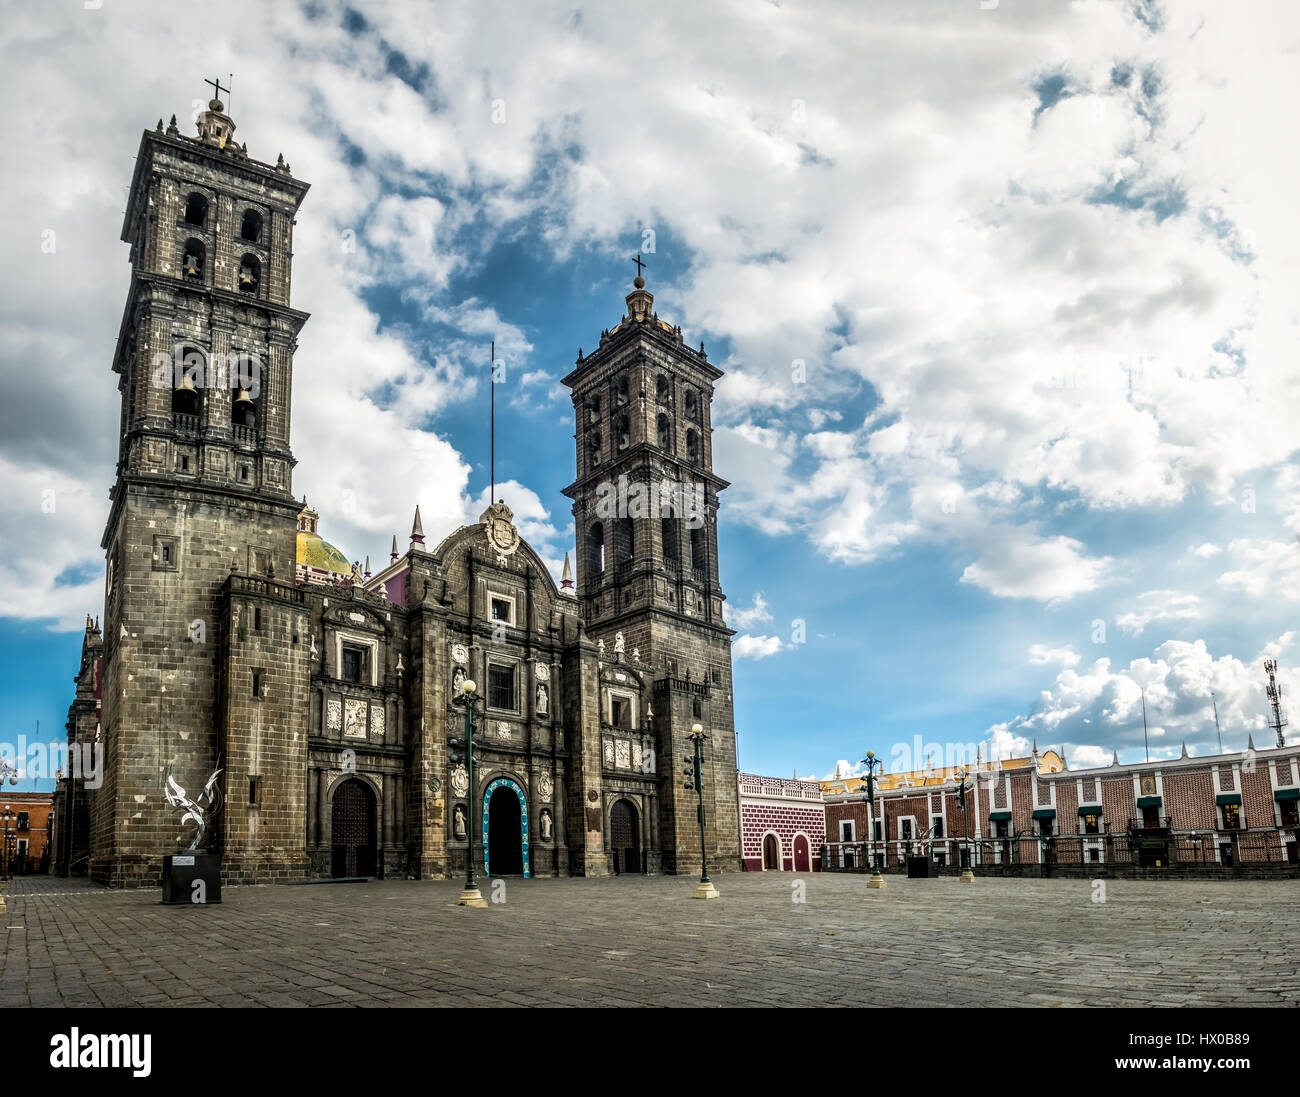 Facade of Puebla Cathedral - Puebla, Mexico Stock Photo